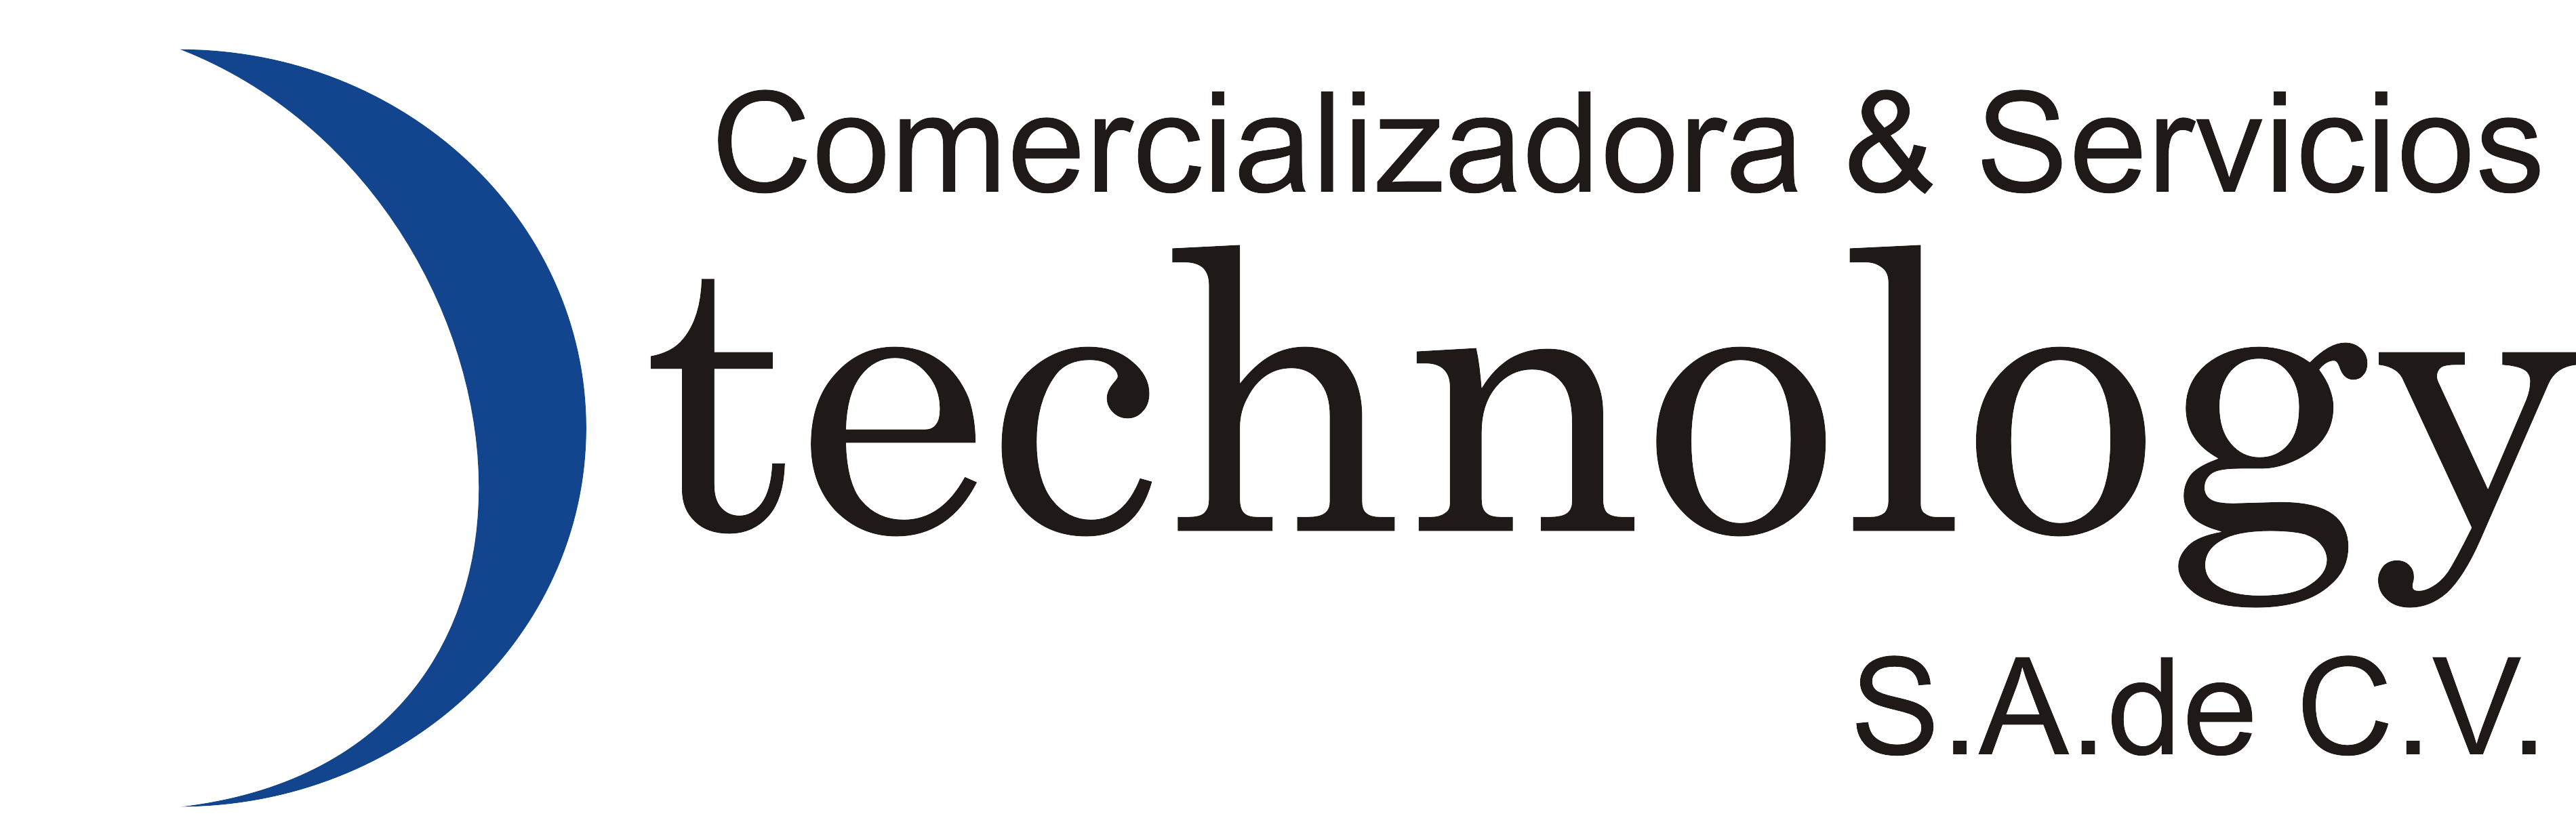 Comercializadora y Servicios Dtechnology, SA De CV